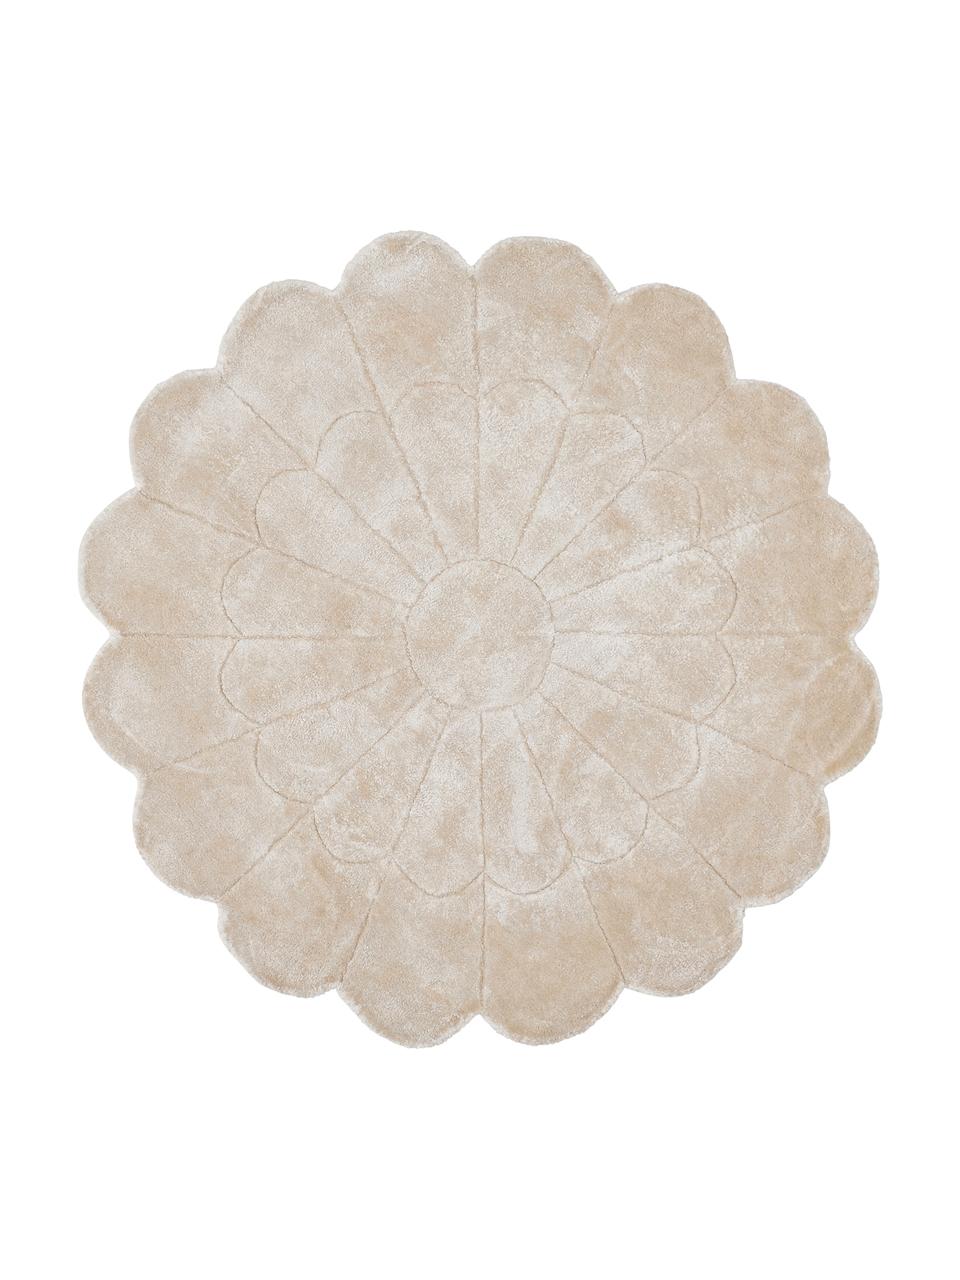 Ručně vyšívaný viskózový koberec Flower, 100 % viskóza, Béžová, Ø 120 cm (velikost S)